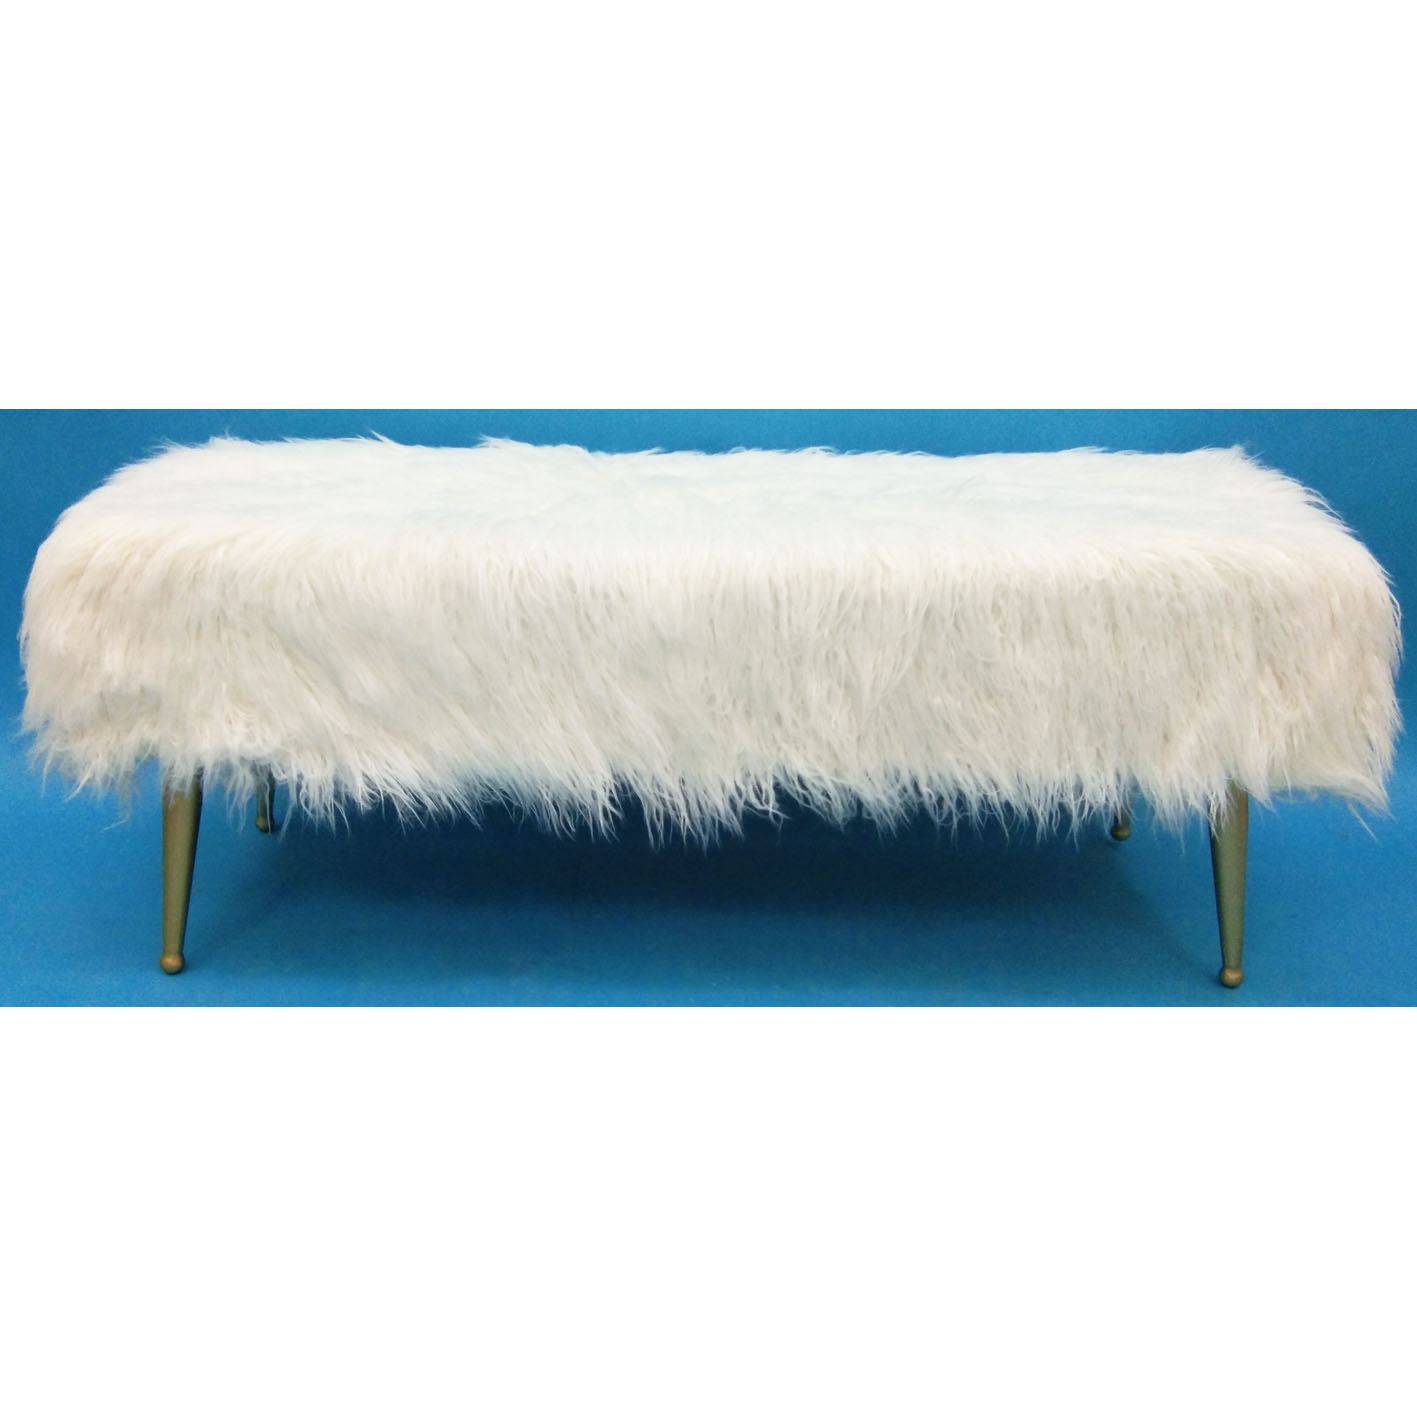 Rectangular fake wool bench with metal legs 